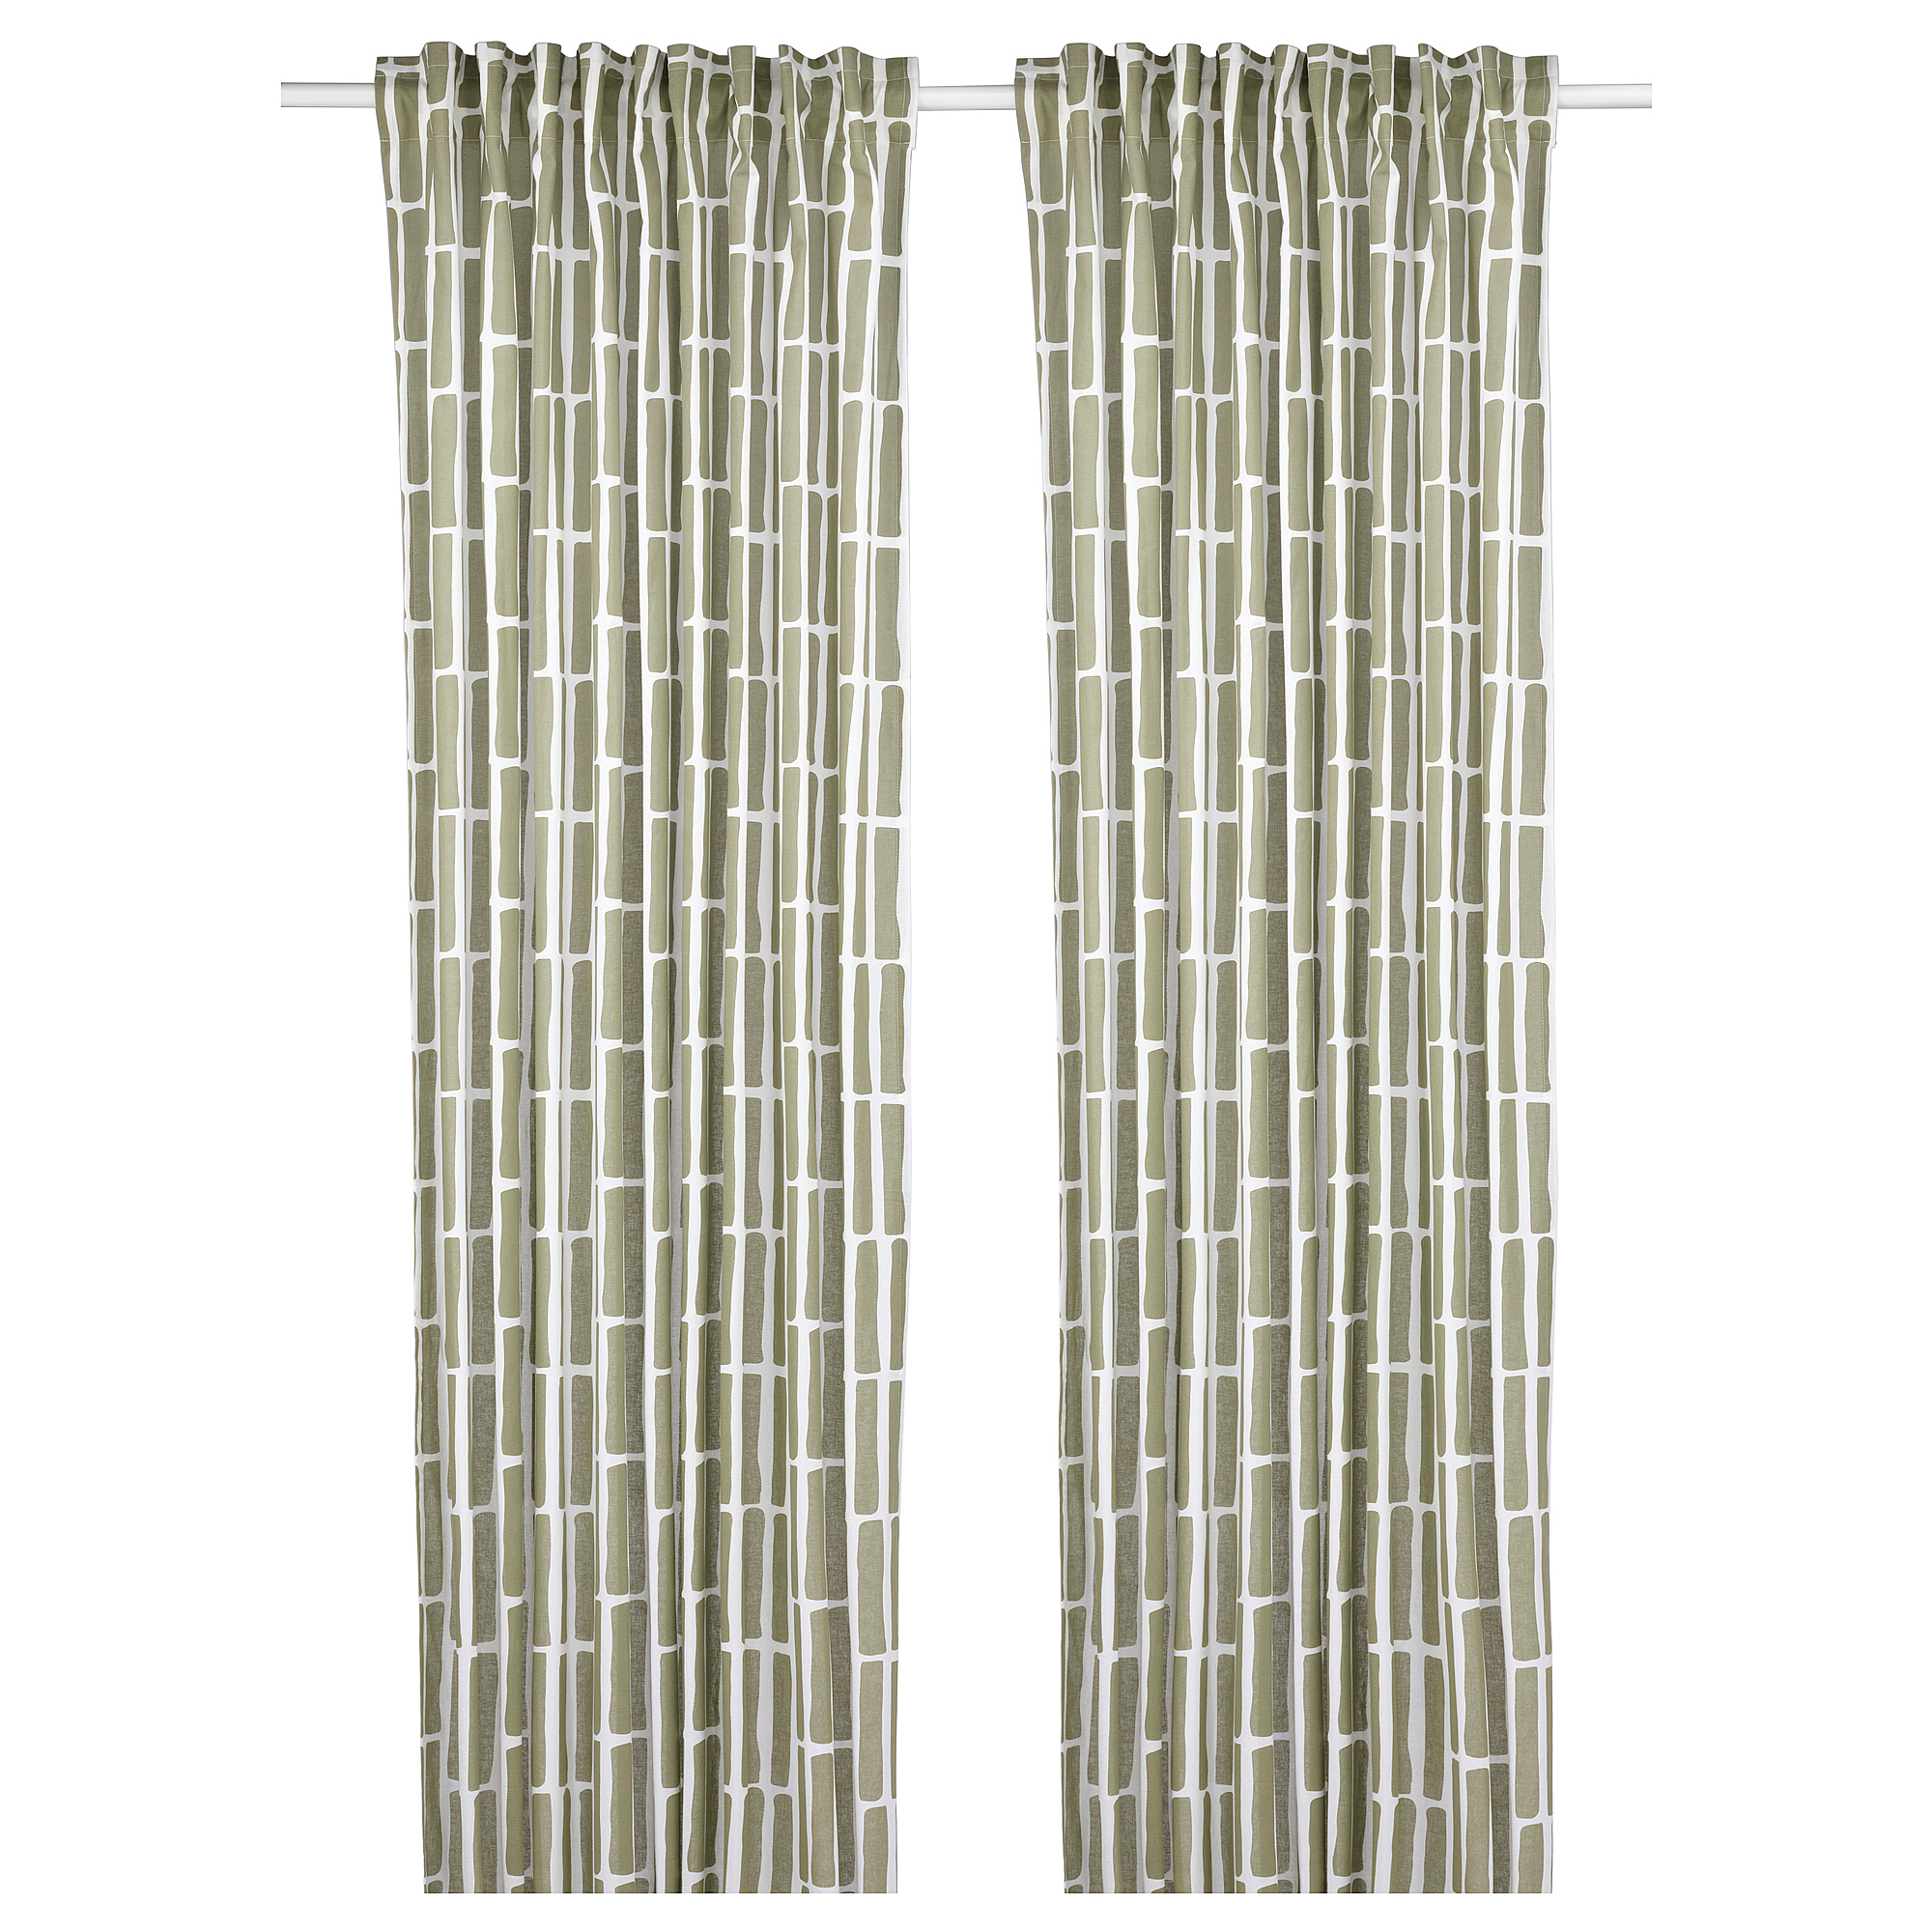 SKOGSSTJÄRNA curtains, 1 pair